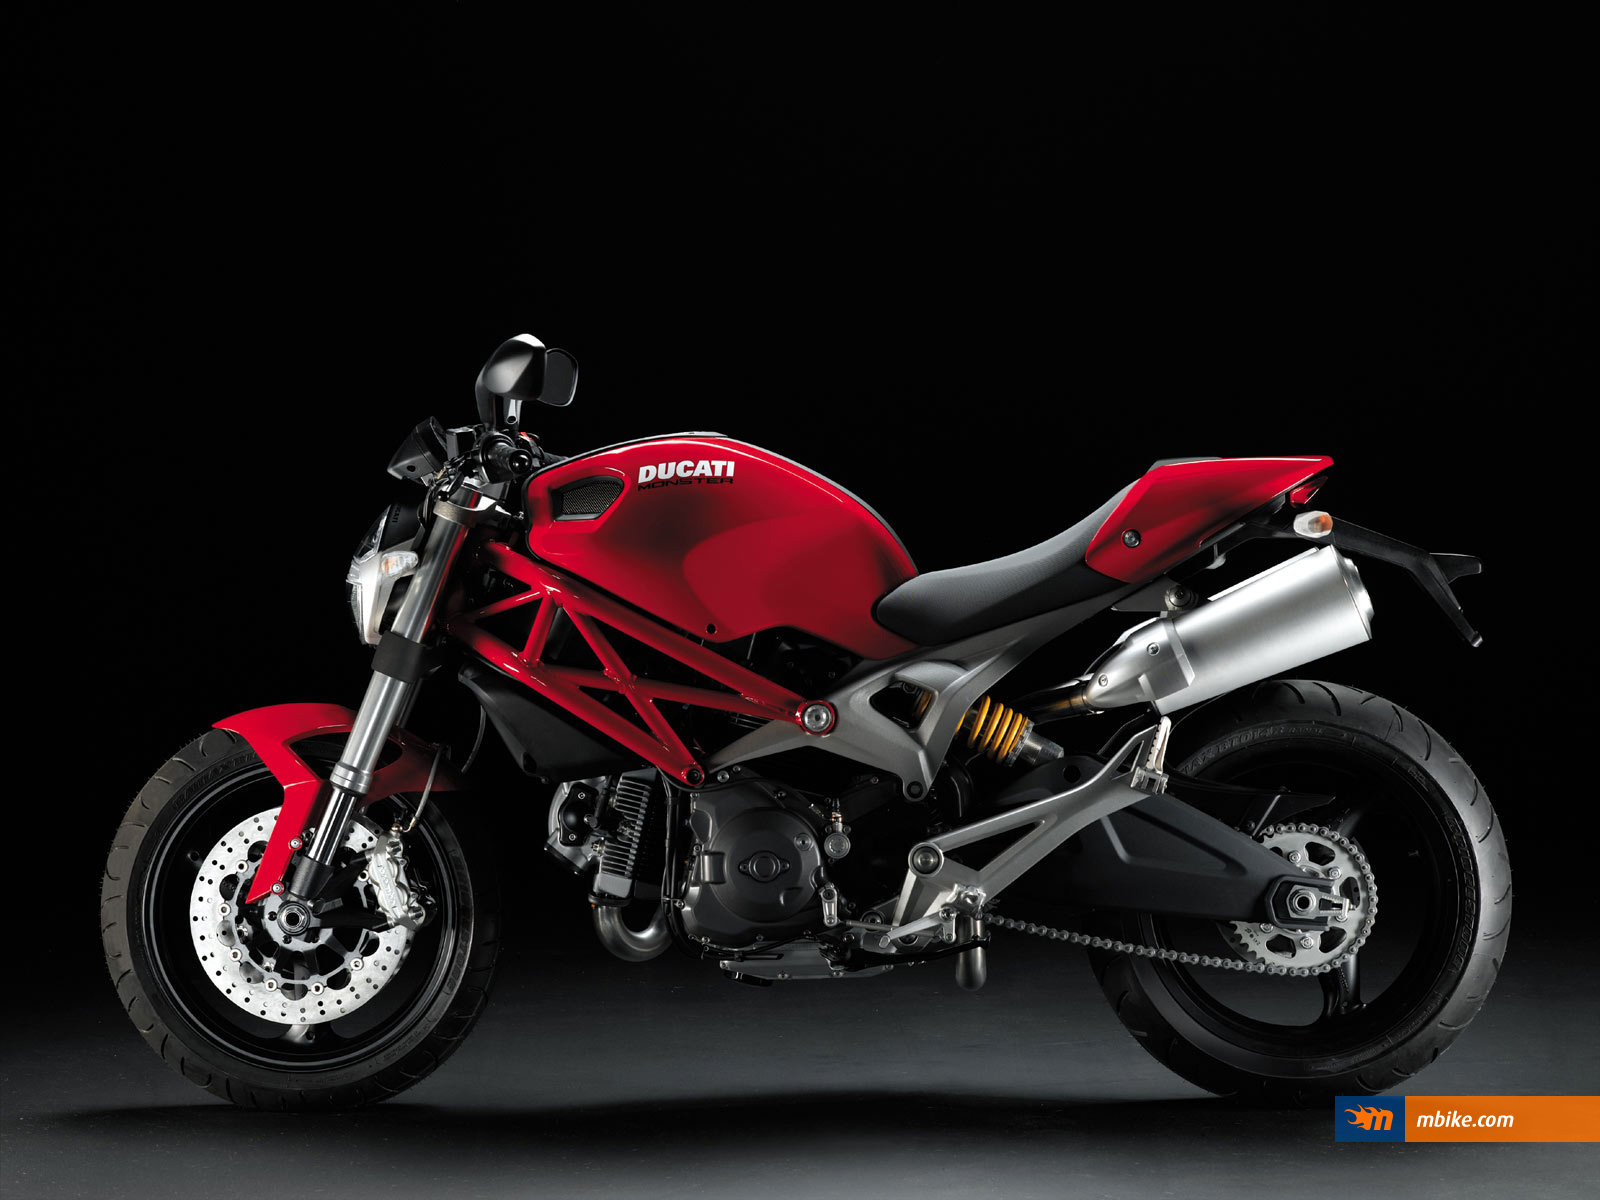 2008 Ducati Monster 696